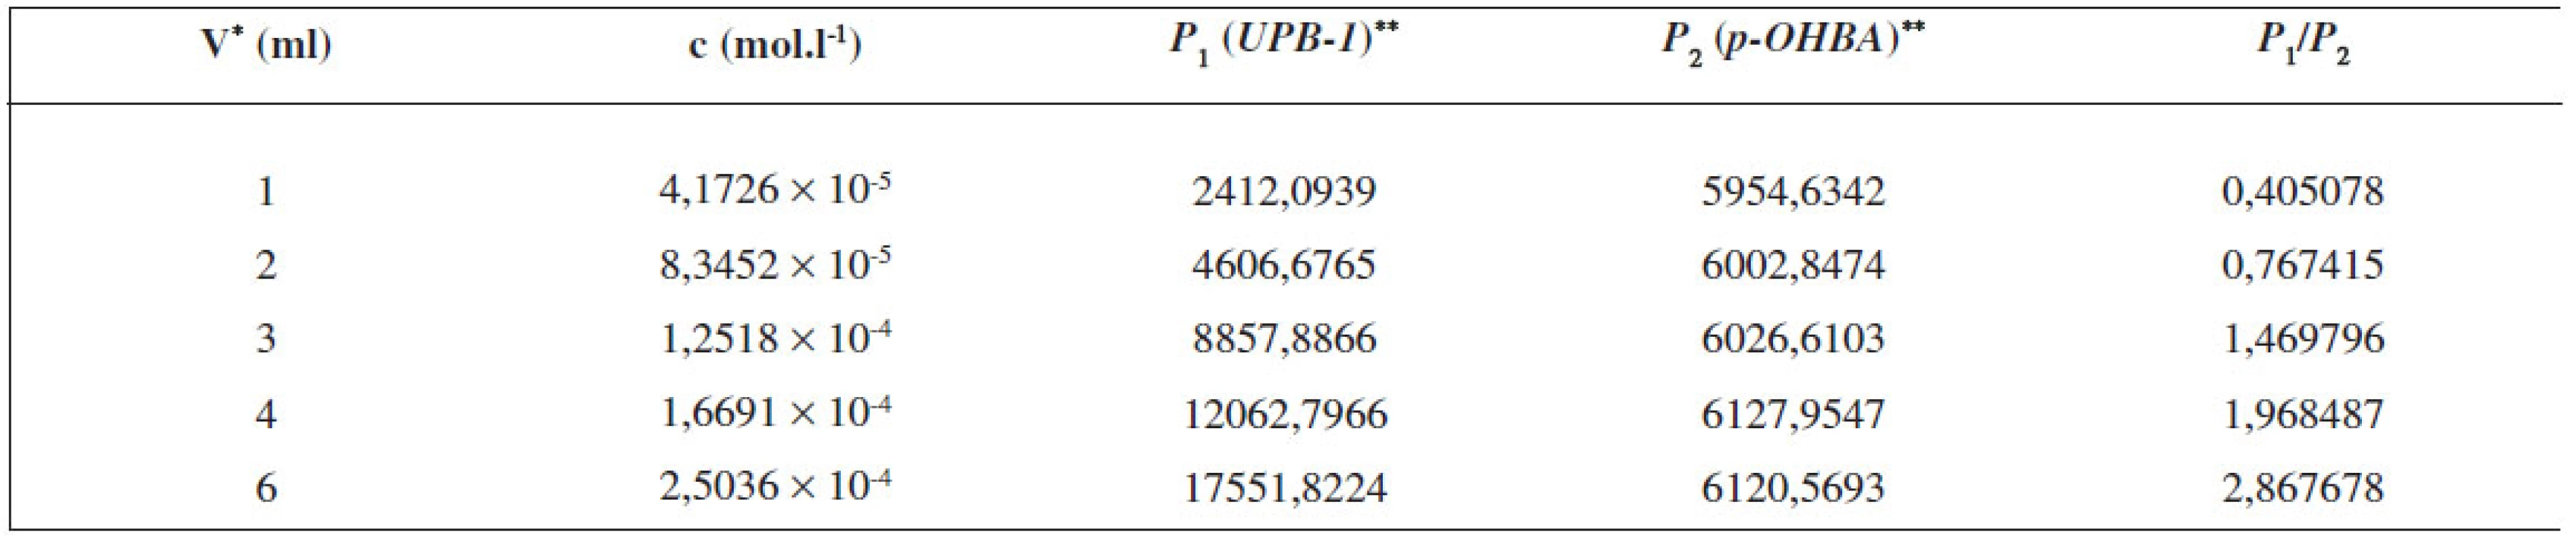 Parametre potrebné na zostrojenie kalibračnej krivky pre stanovenie obsahu UPB-1 pomocou RP-HPLC